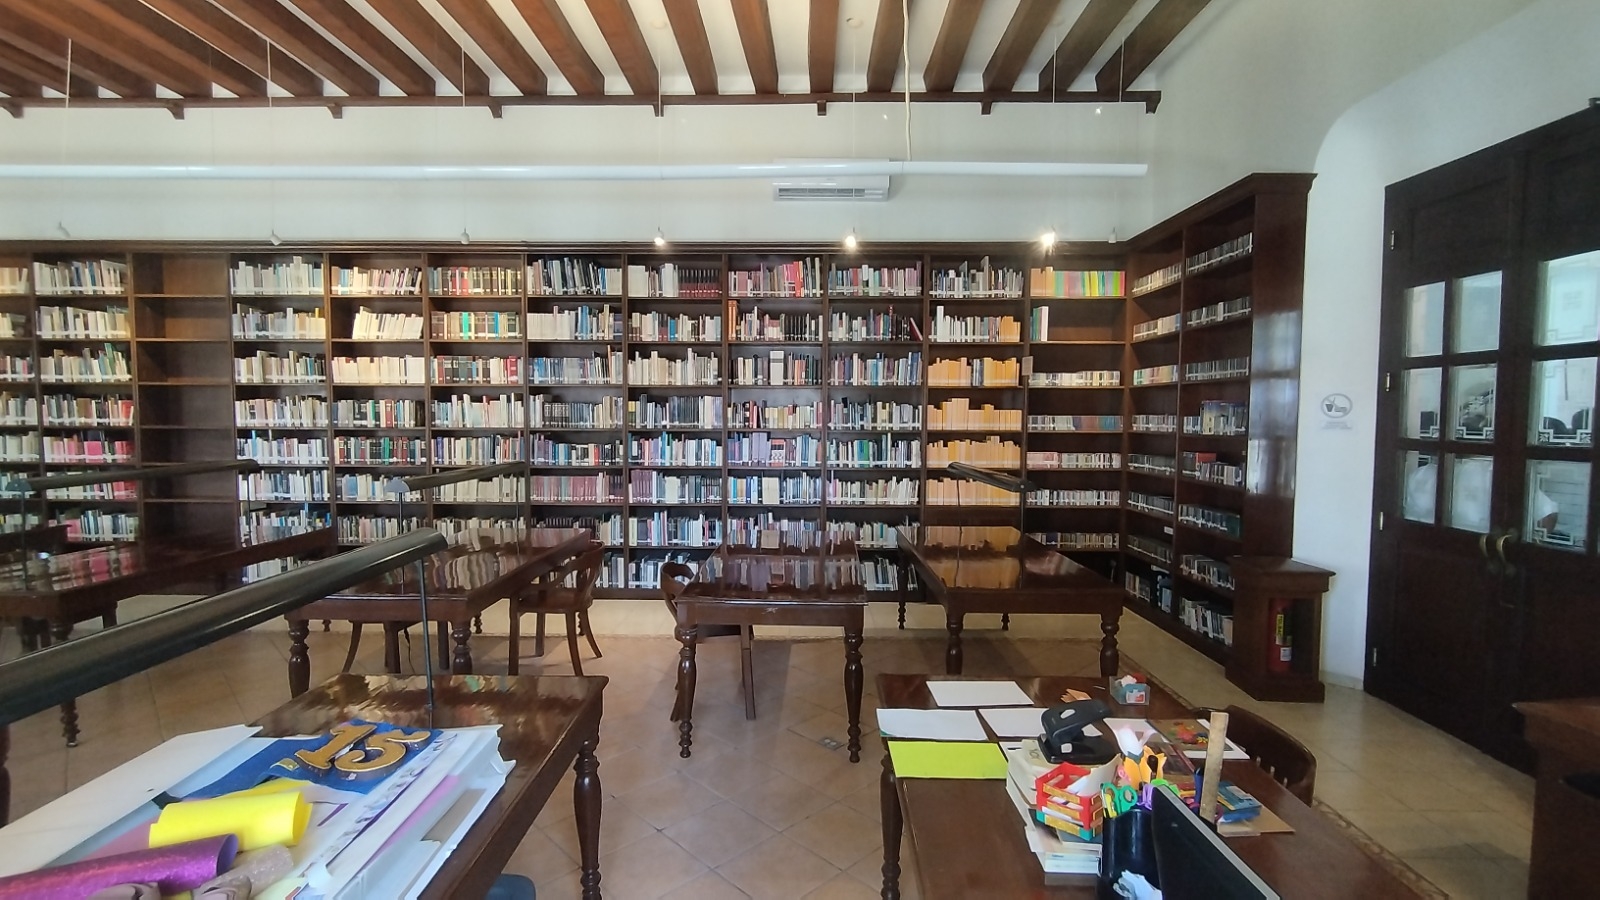 20 años entre libros, celebran aniversario de la Biblioteca Pública Campeche